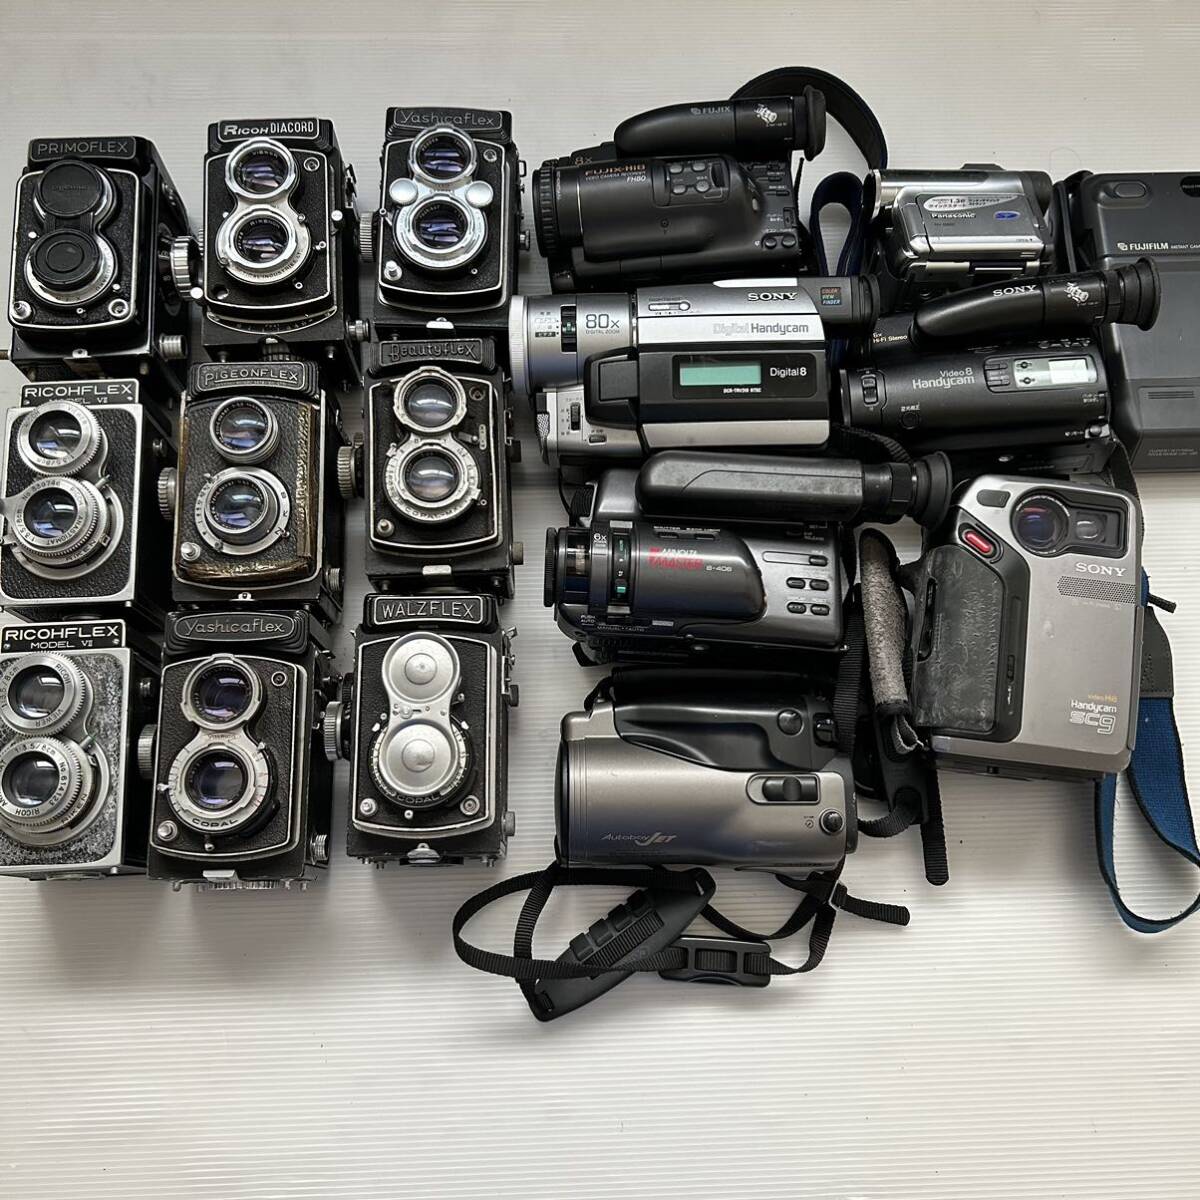 1 иен ~ двухобъективный зеркальный камера видео камера суммировать YASHICA RICOH PRIMO PIGEONfUJIX SONY MINOLTA Canon Panasonic и т.п. ( утиль работоспособность не проверялась KJ)